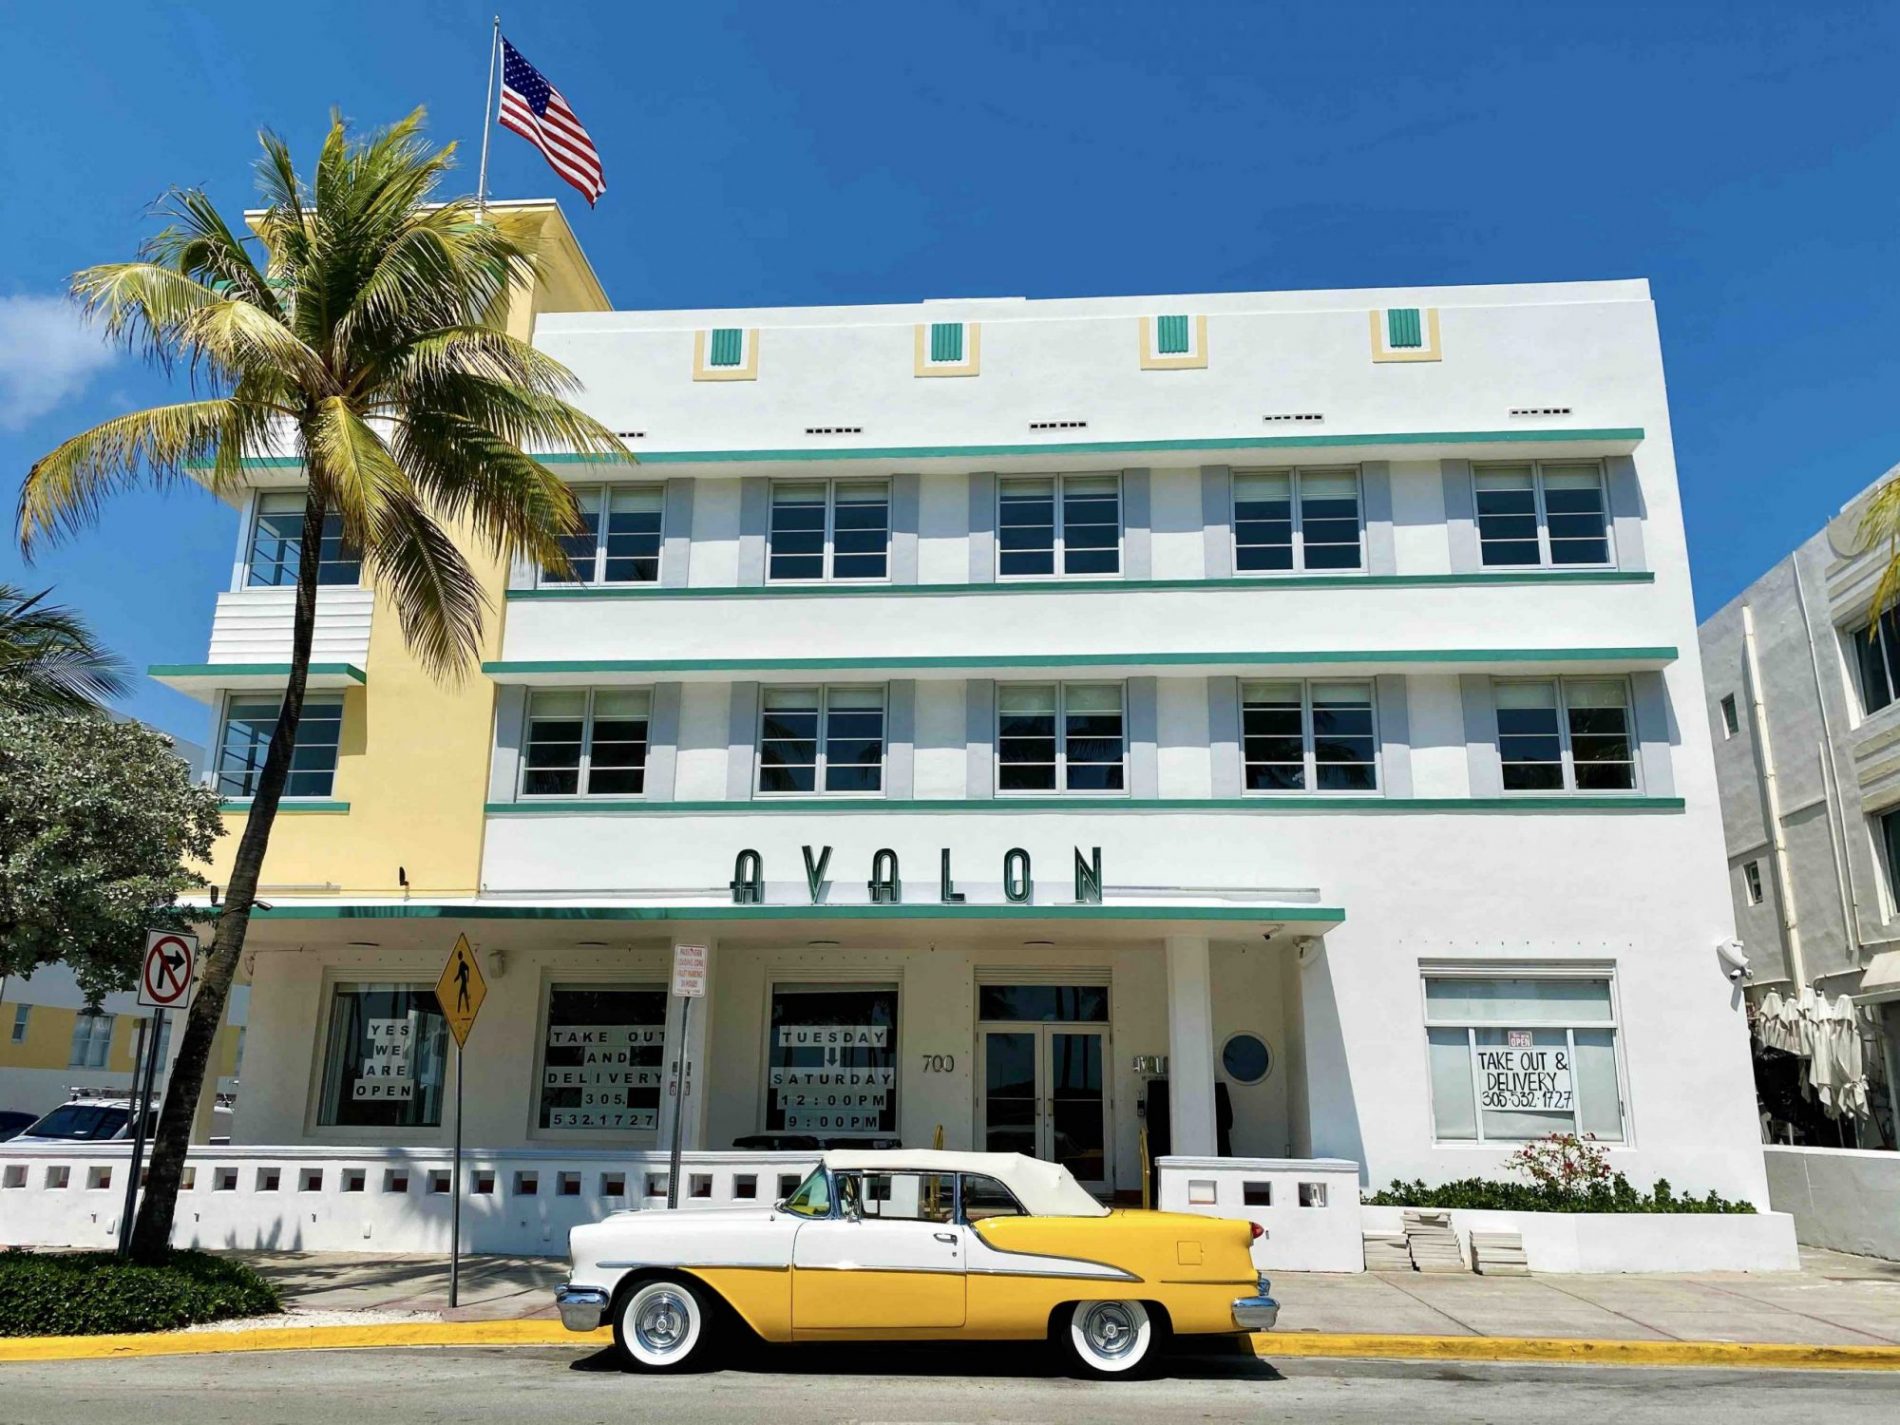 Le Avalon Hotel sur Ocean Drive, et sa fameuse voiture assortie à la façade